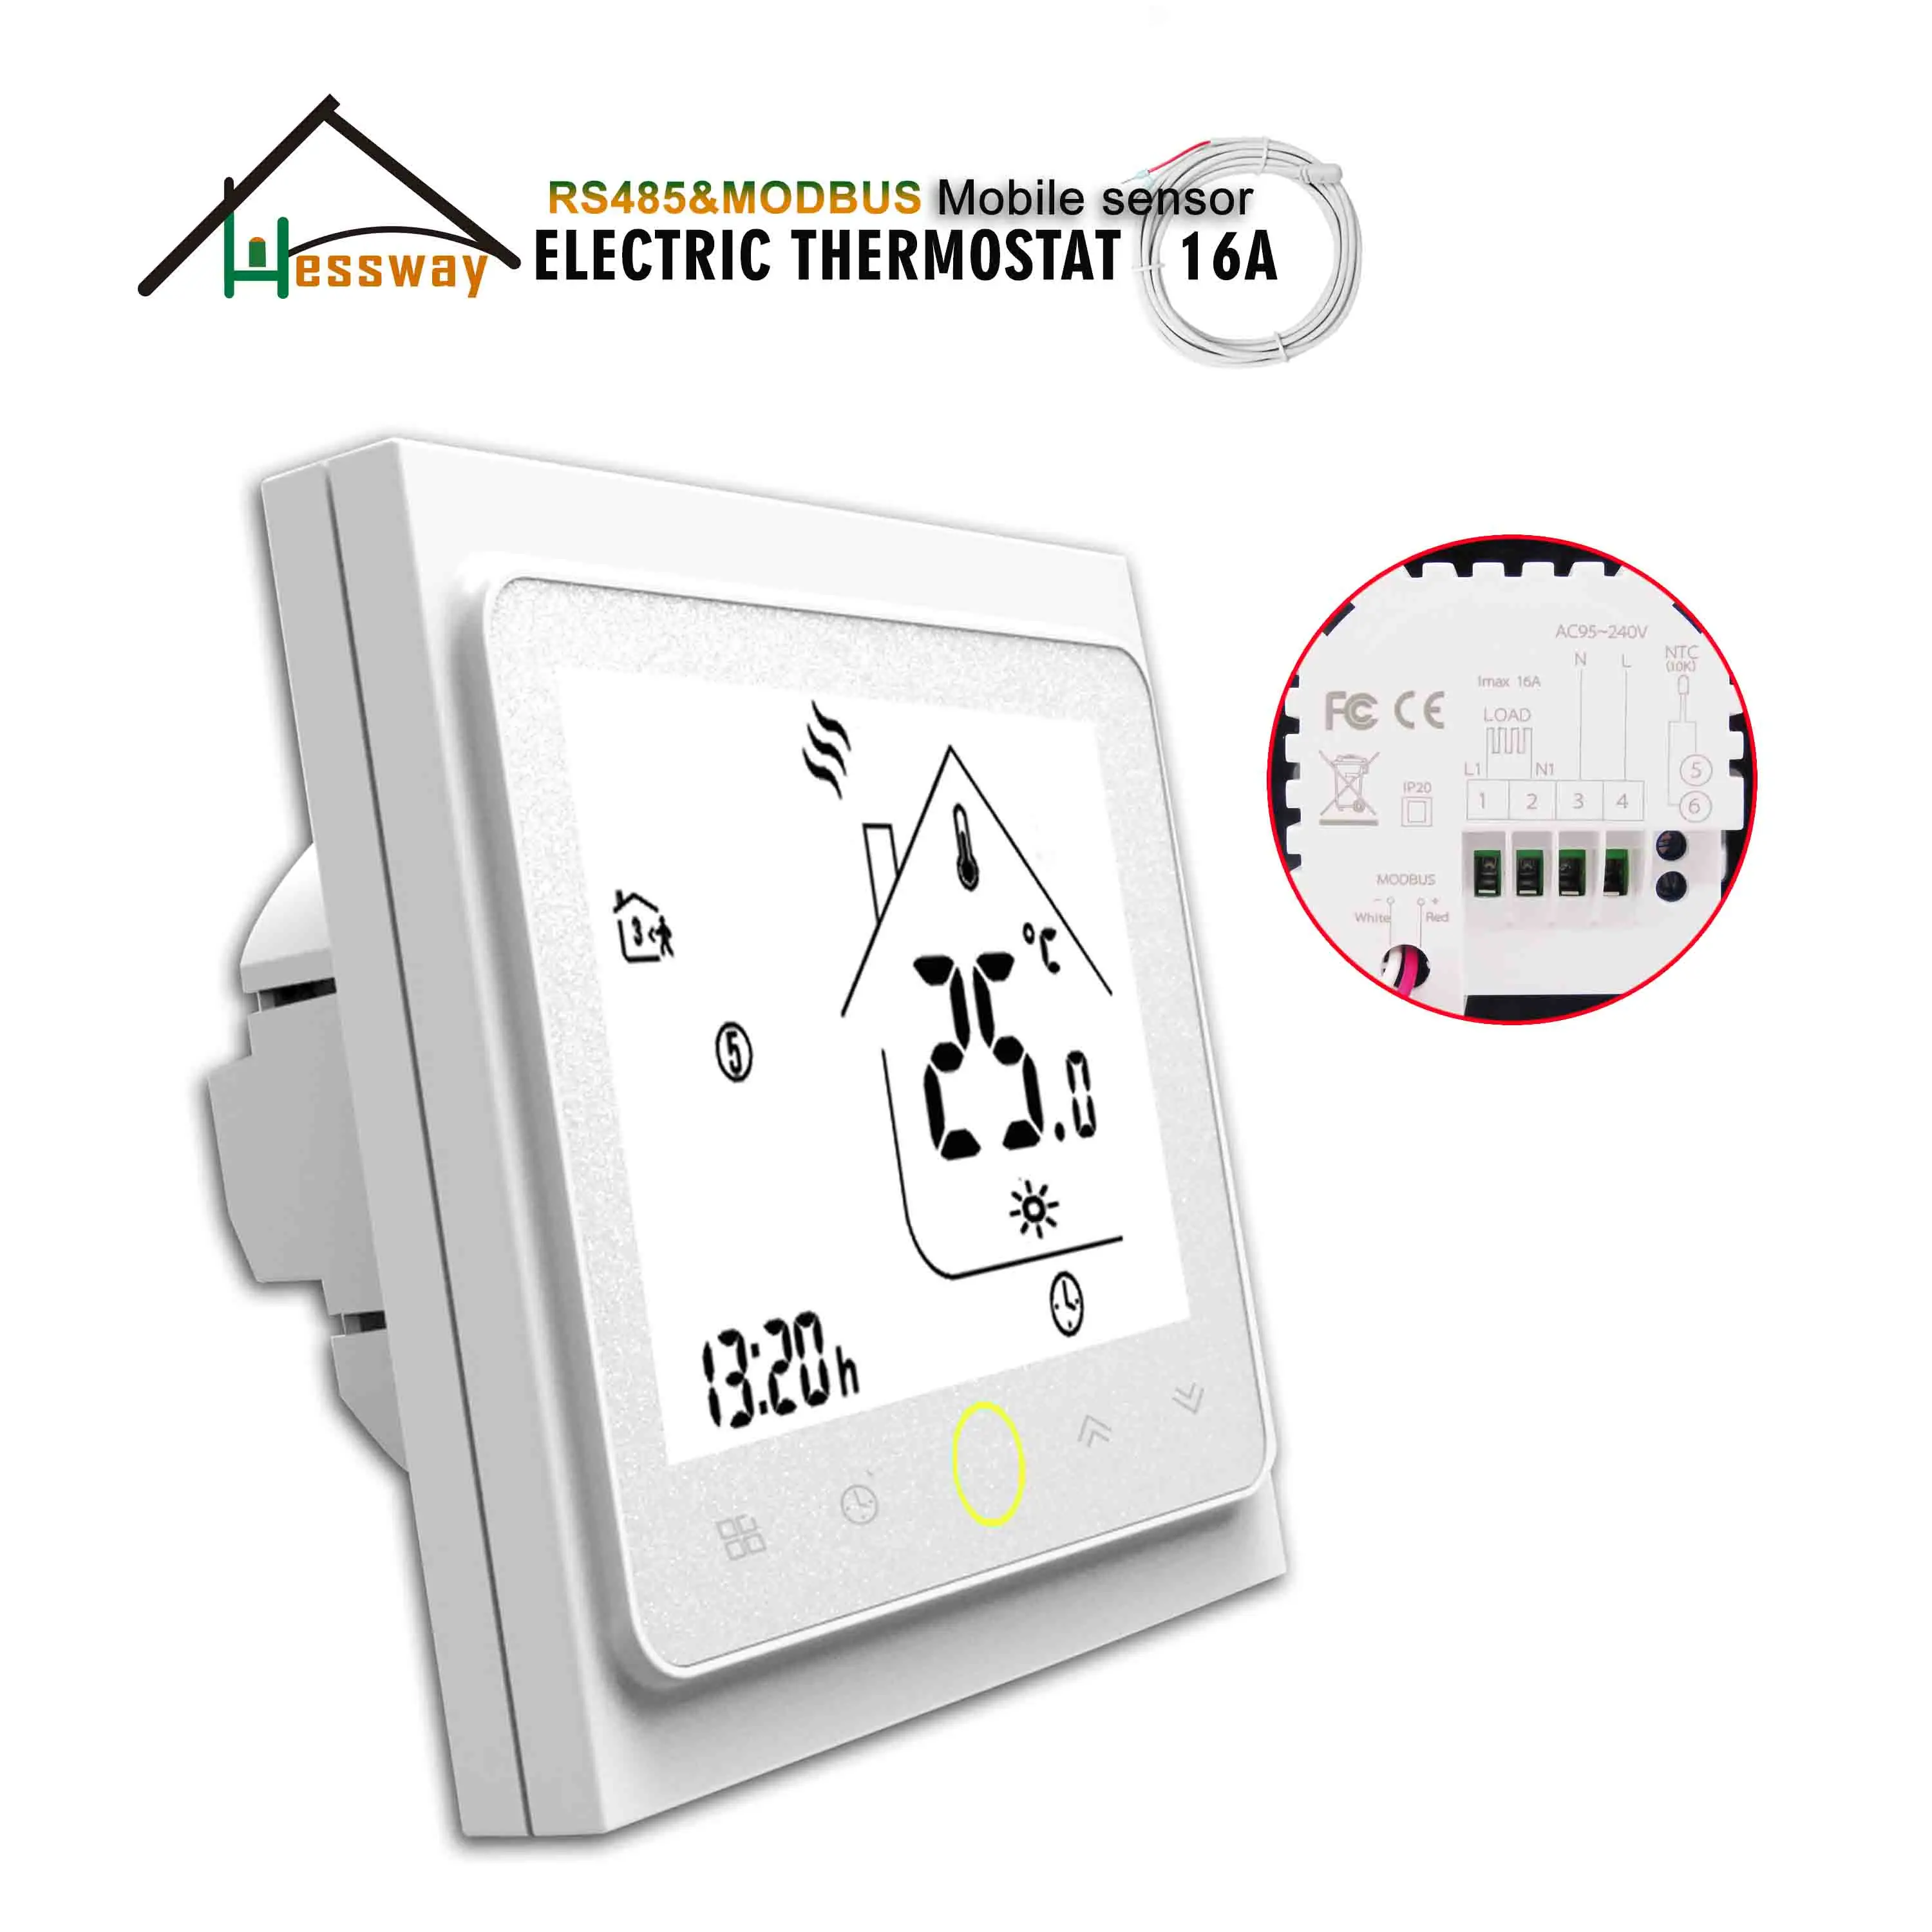 HESSWAY-controlador de temperatura eléctrico de doble Sensor, controlador de temperatura para termostato RS485, protocolo Modbus, operación remota, 24V, 95-250VAC, 16A